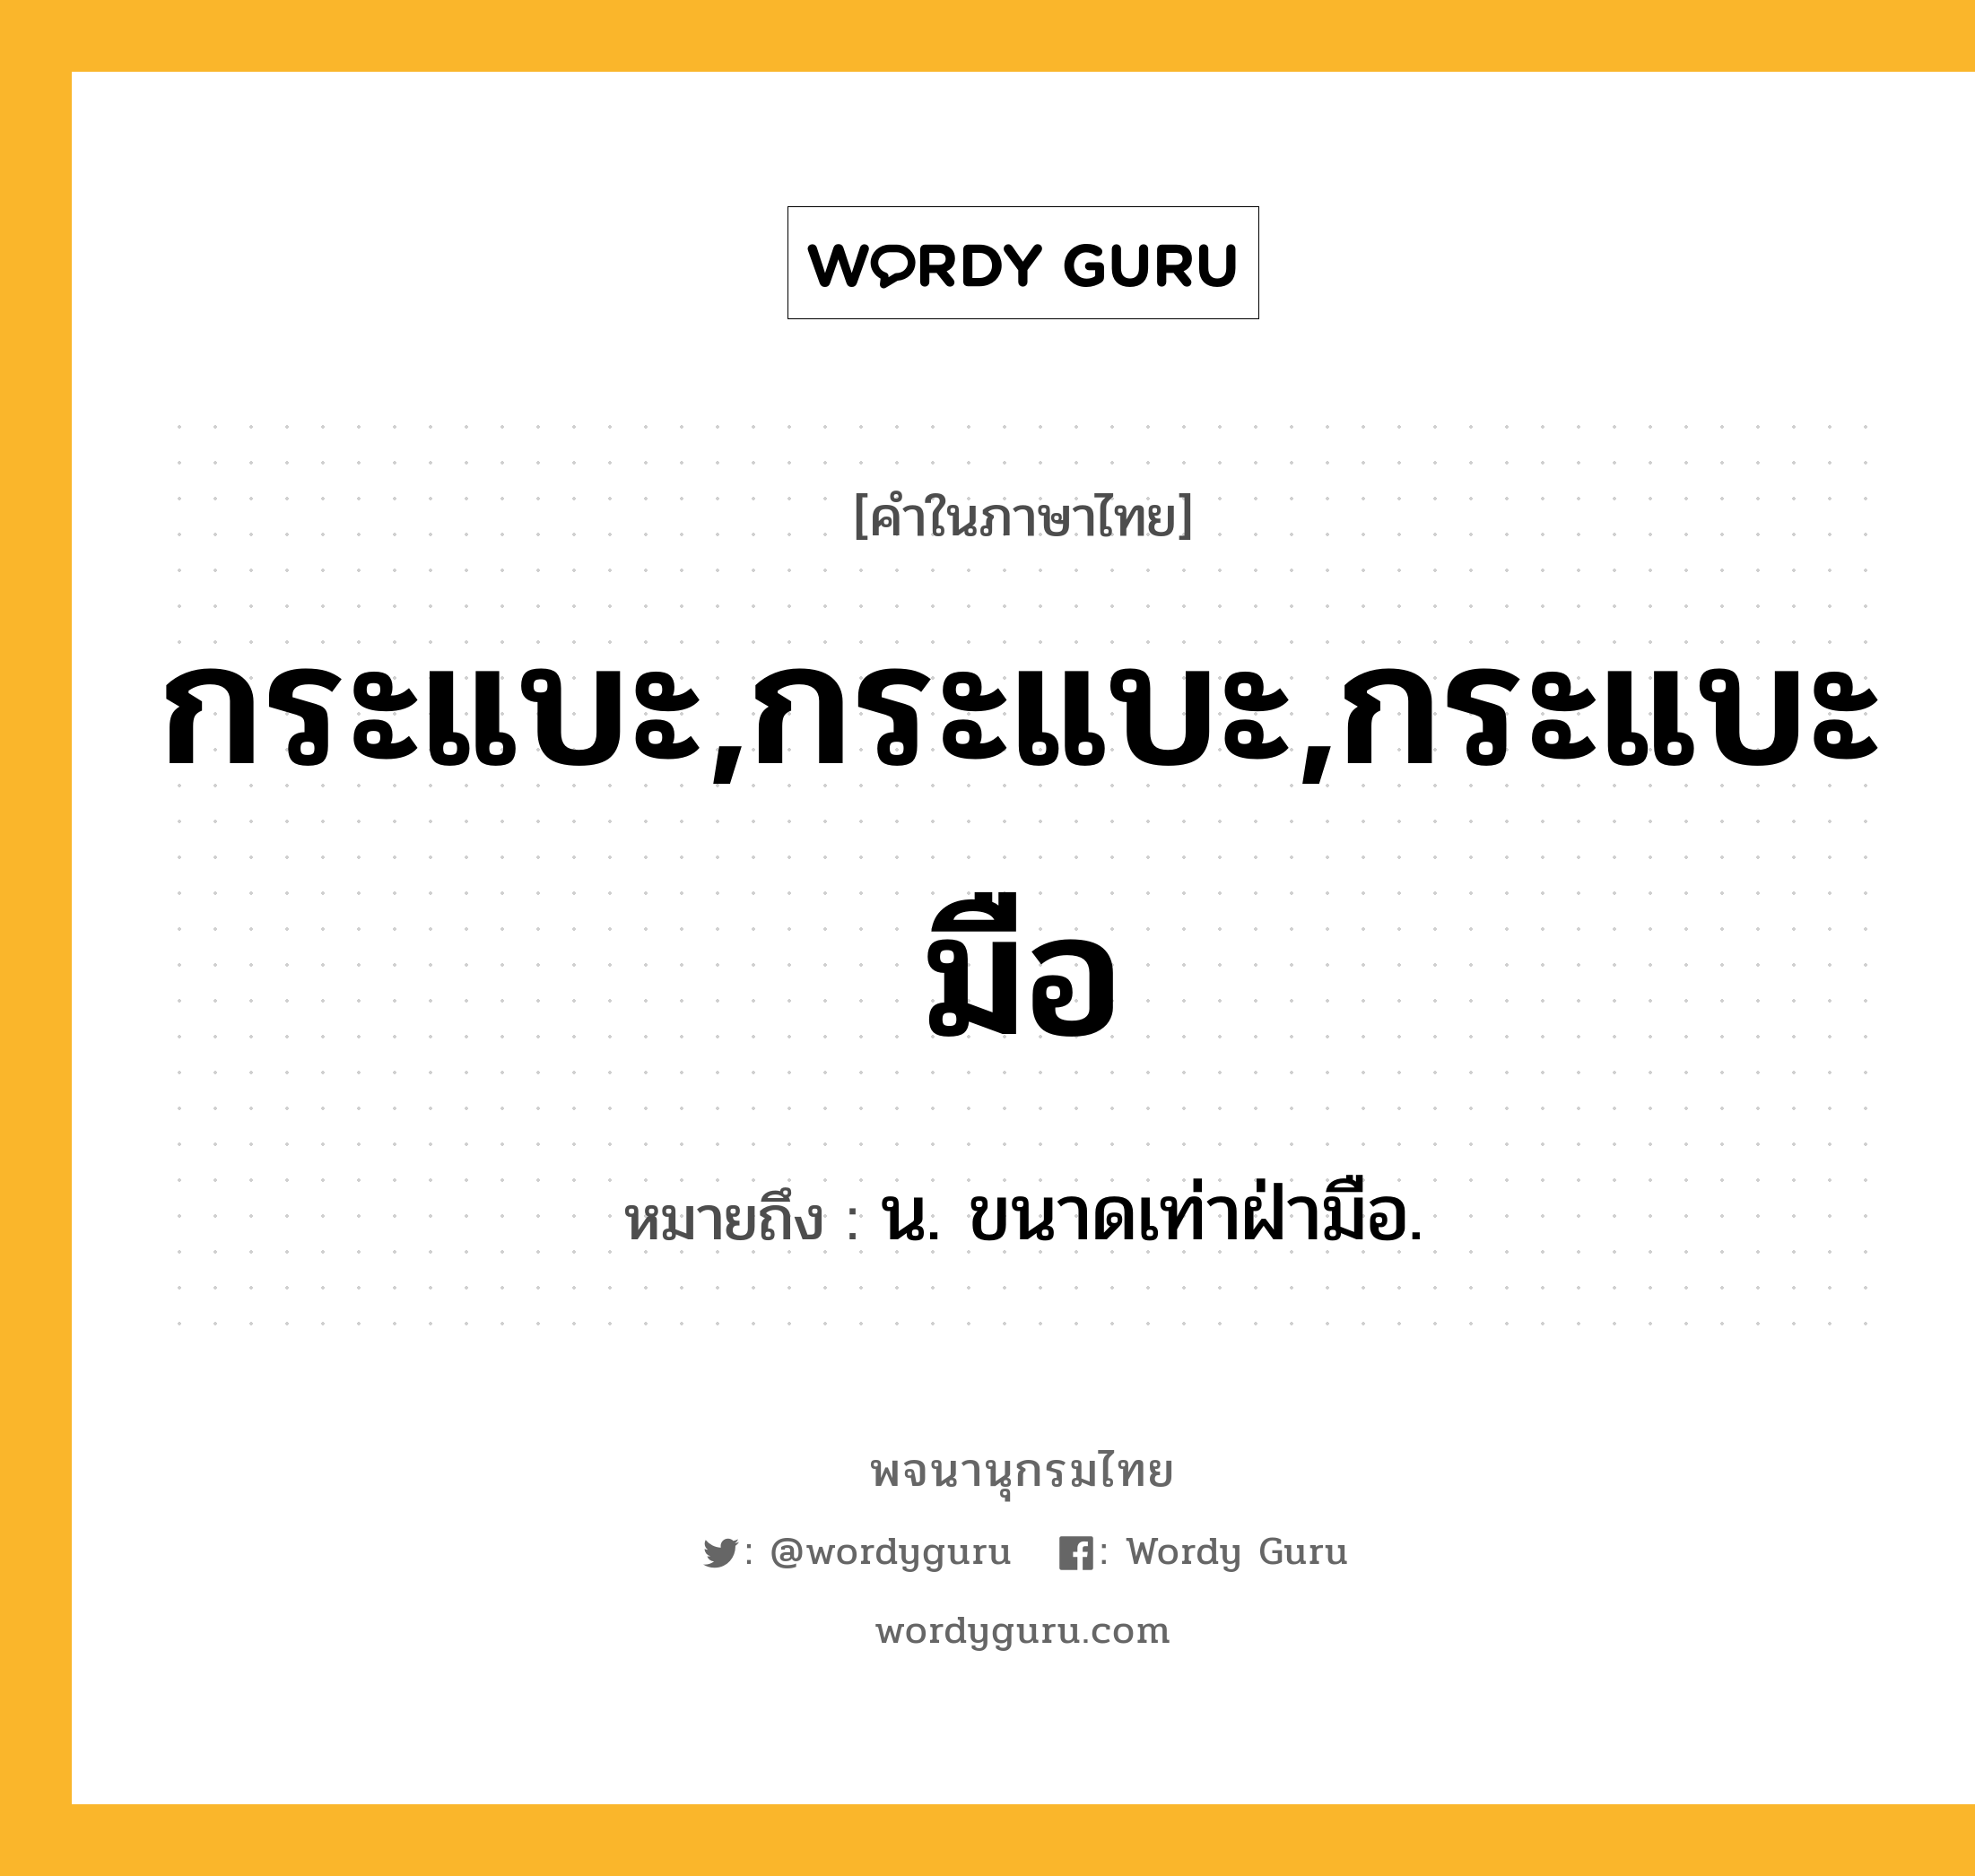 กระแบะ,กระแบะ,กระแบะมือ หมายถึงอะไร?, คำในภาษาไทย กระแบะ,กระแบะ,กระแบะมือ หมายถึง น. ขนาดเท่าฝ่ามือ.